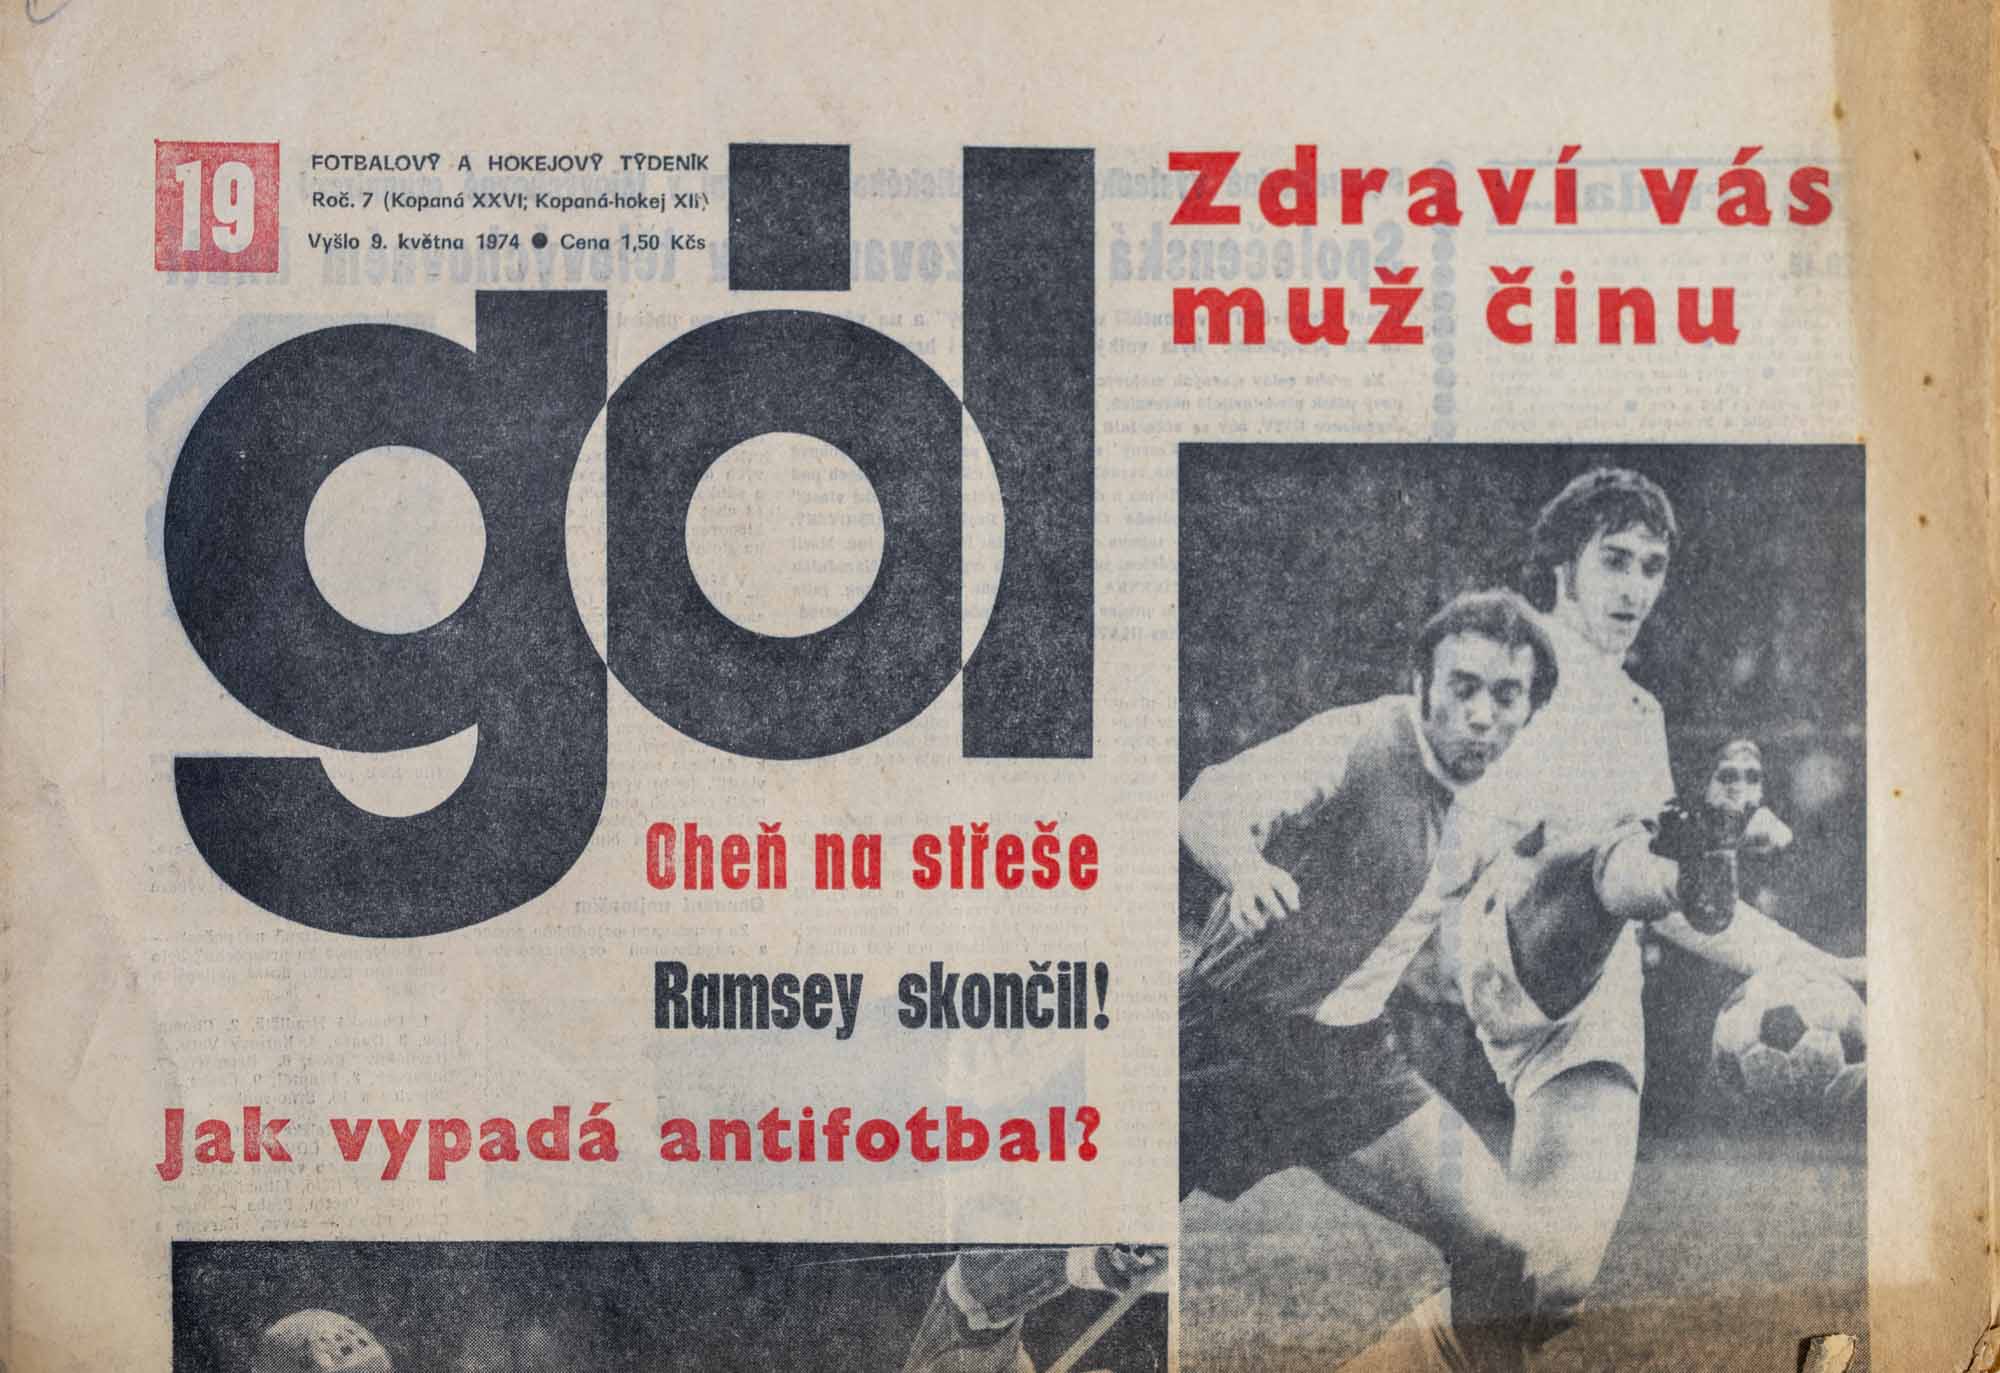 GÓL. Fotbalový a hokejový týdeník, 7/26/12/1974 č. 19